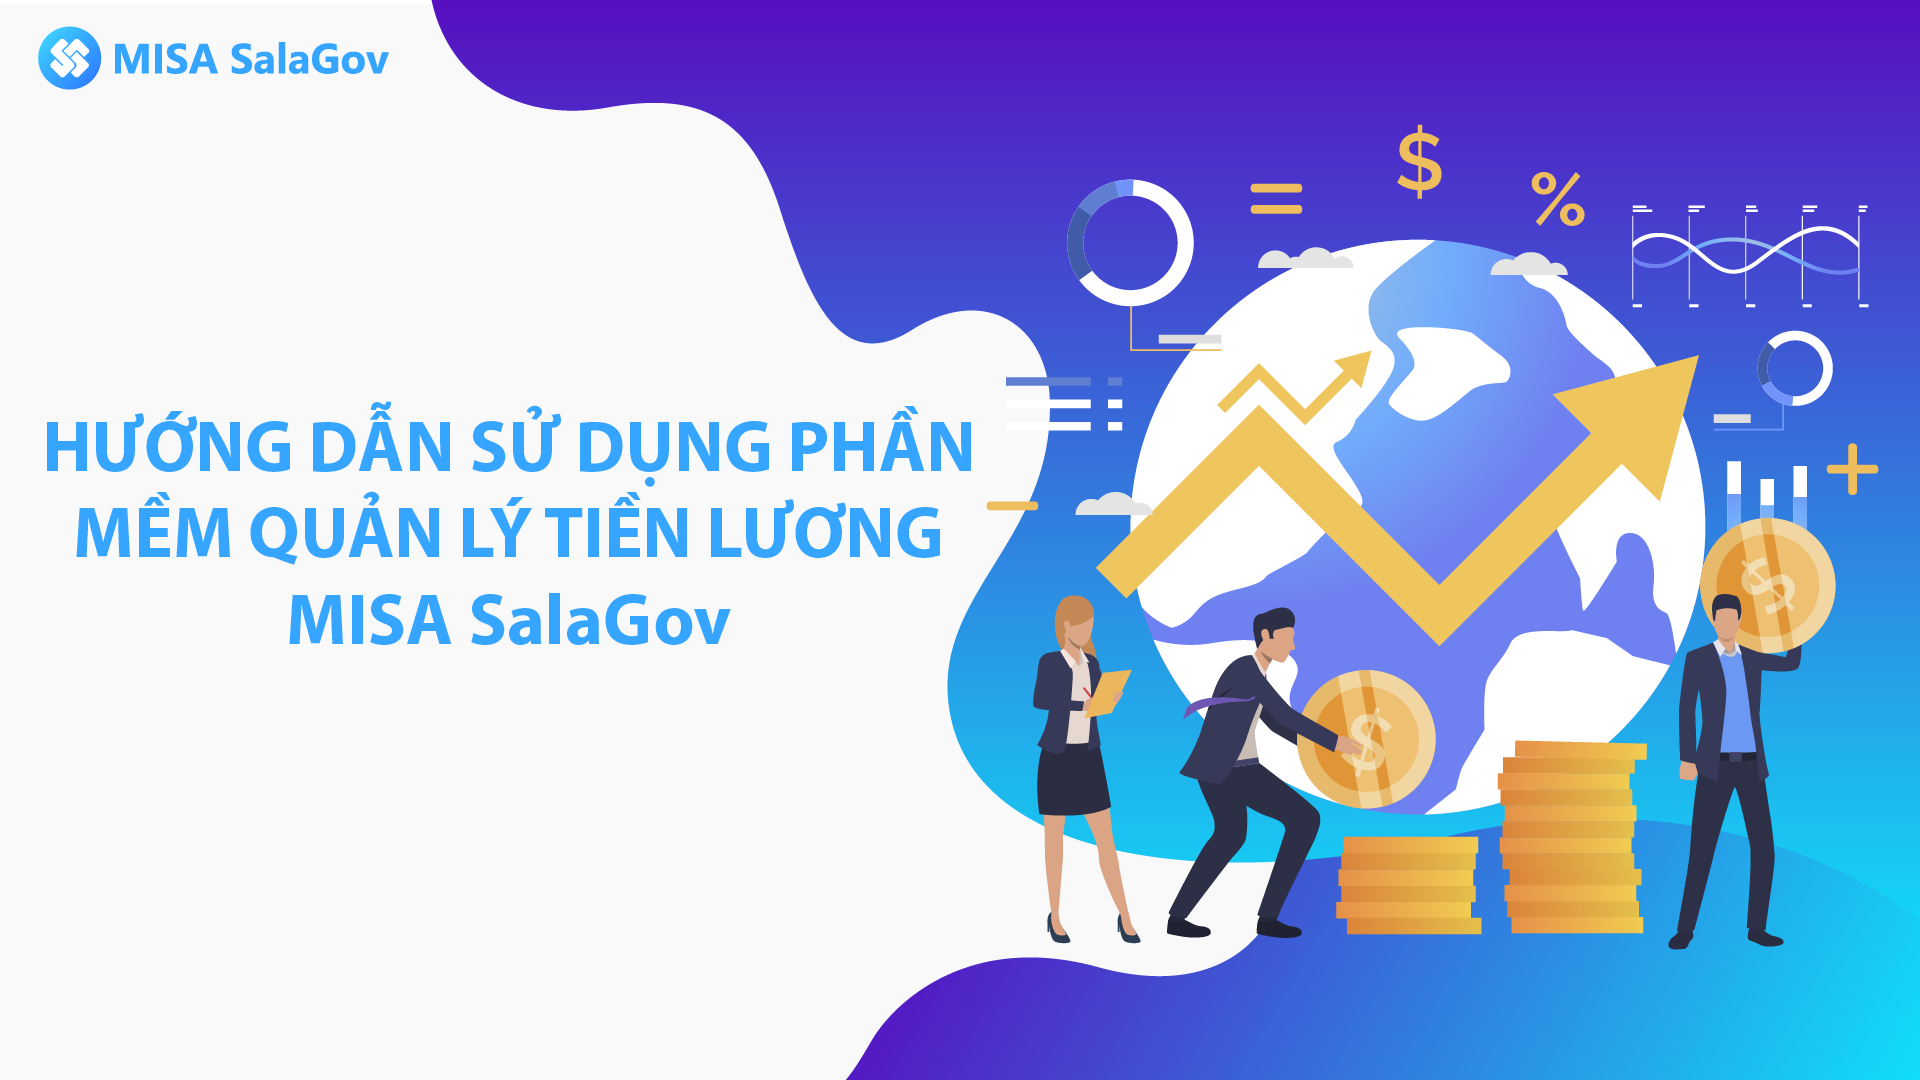 MISA SalaGov - Hướng dẫn sử dụng Phần mềm Quản lý tiền lương